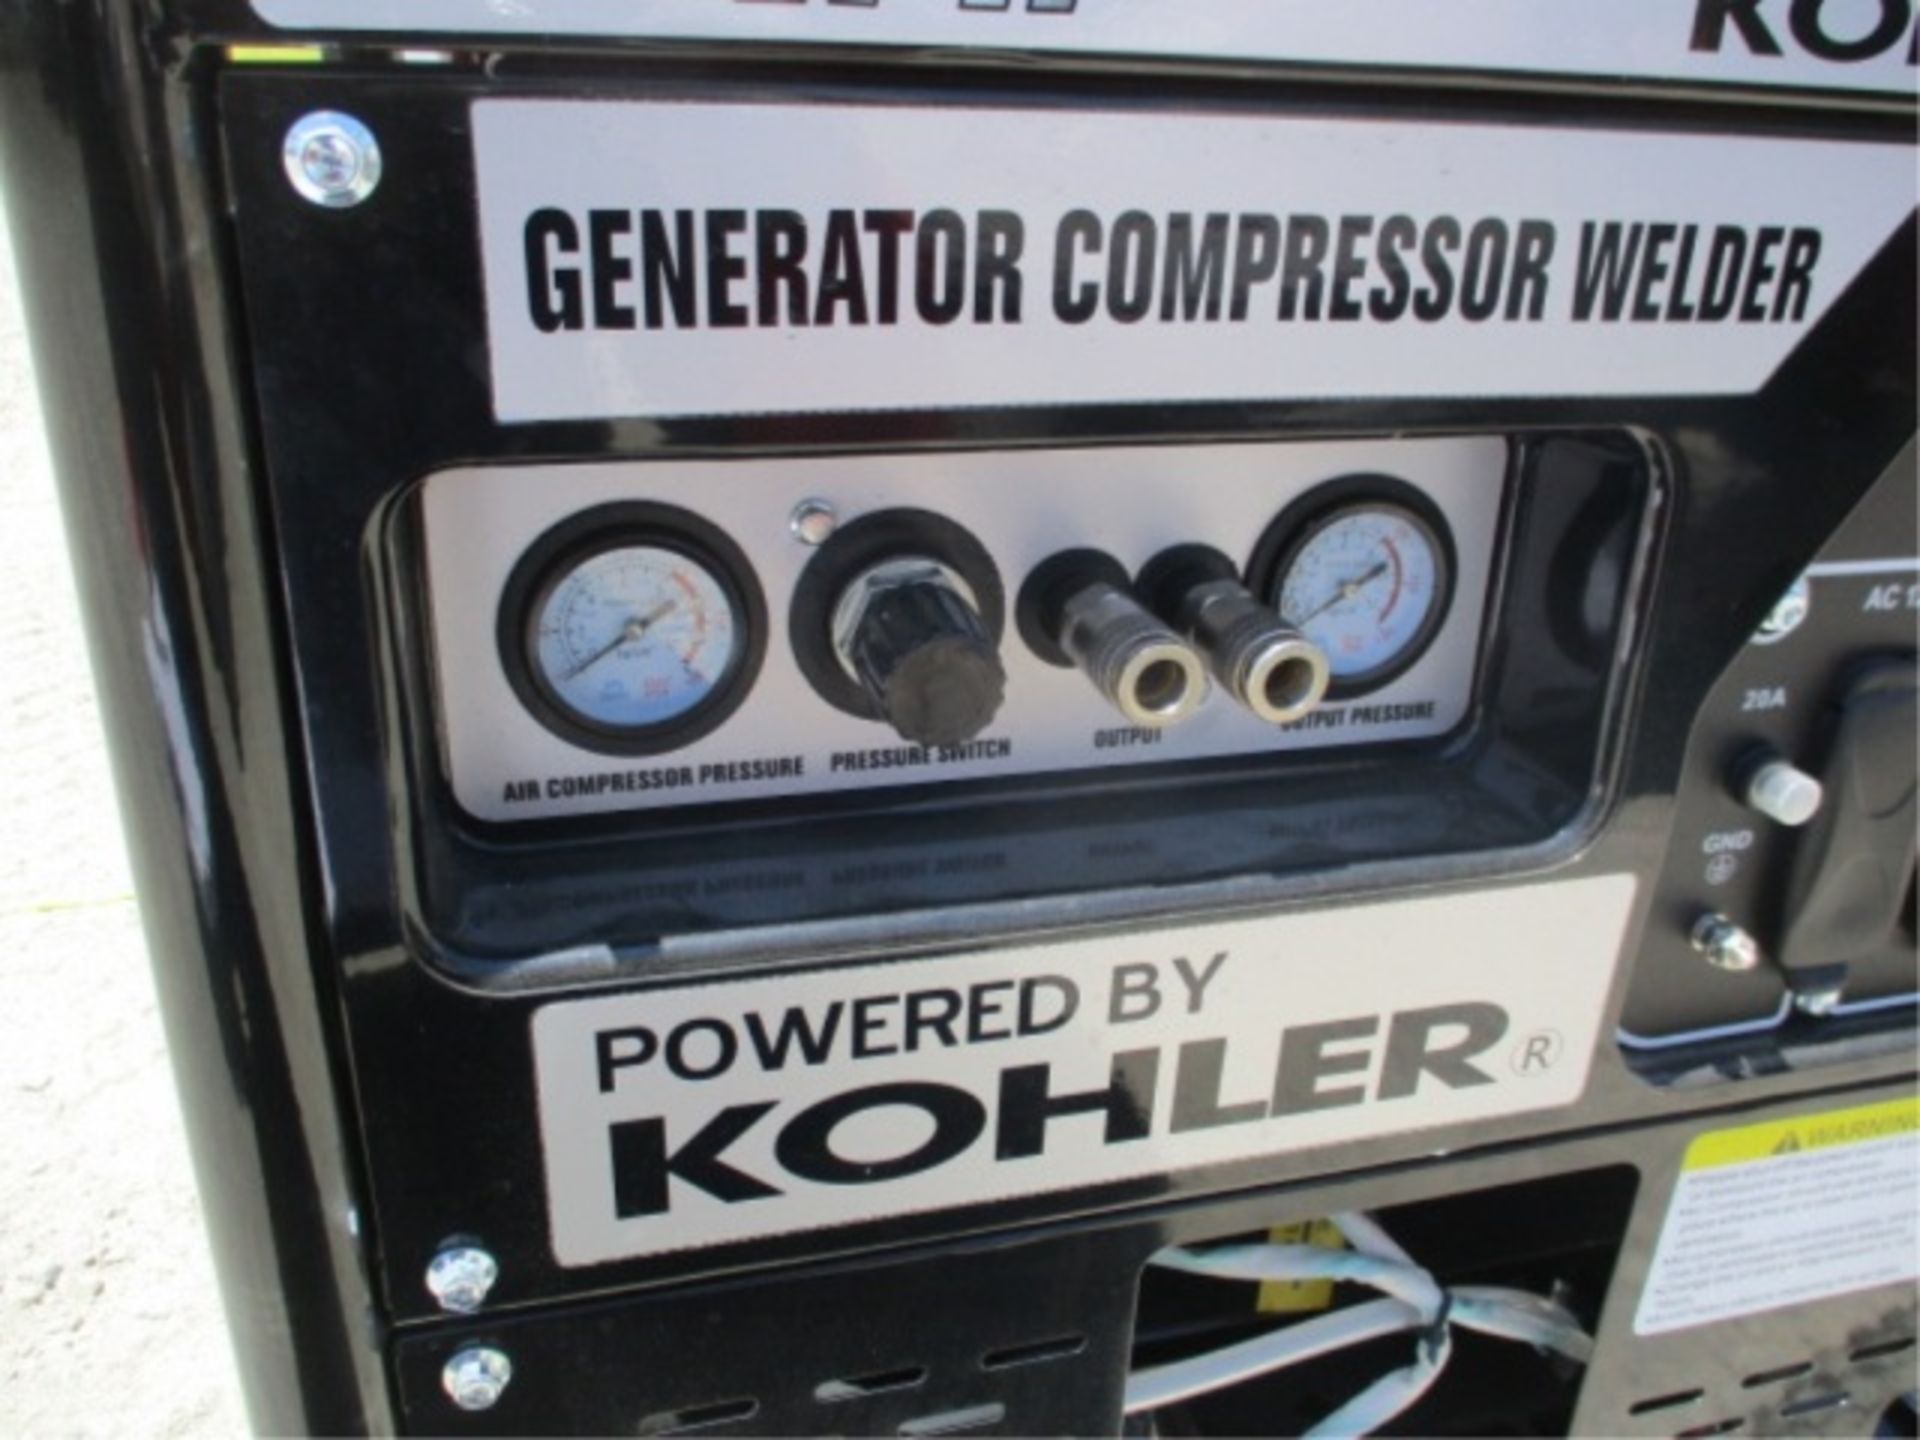 Kohler Command Pro III 9500 Generator Compressor, Welder, Gas Powered, S/N: 4919803918 - Image 18 of 28